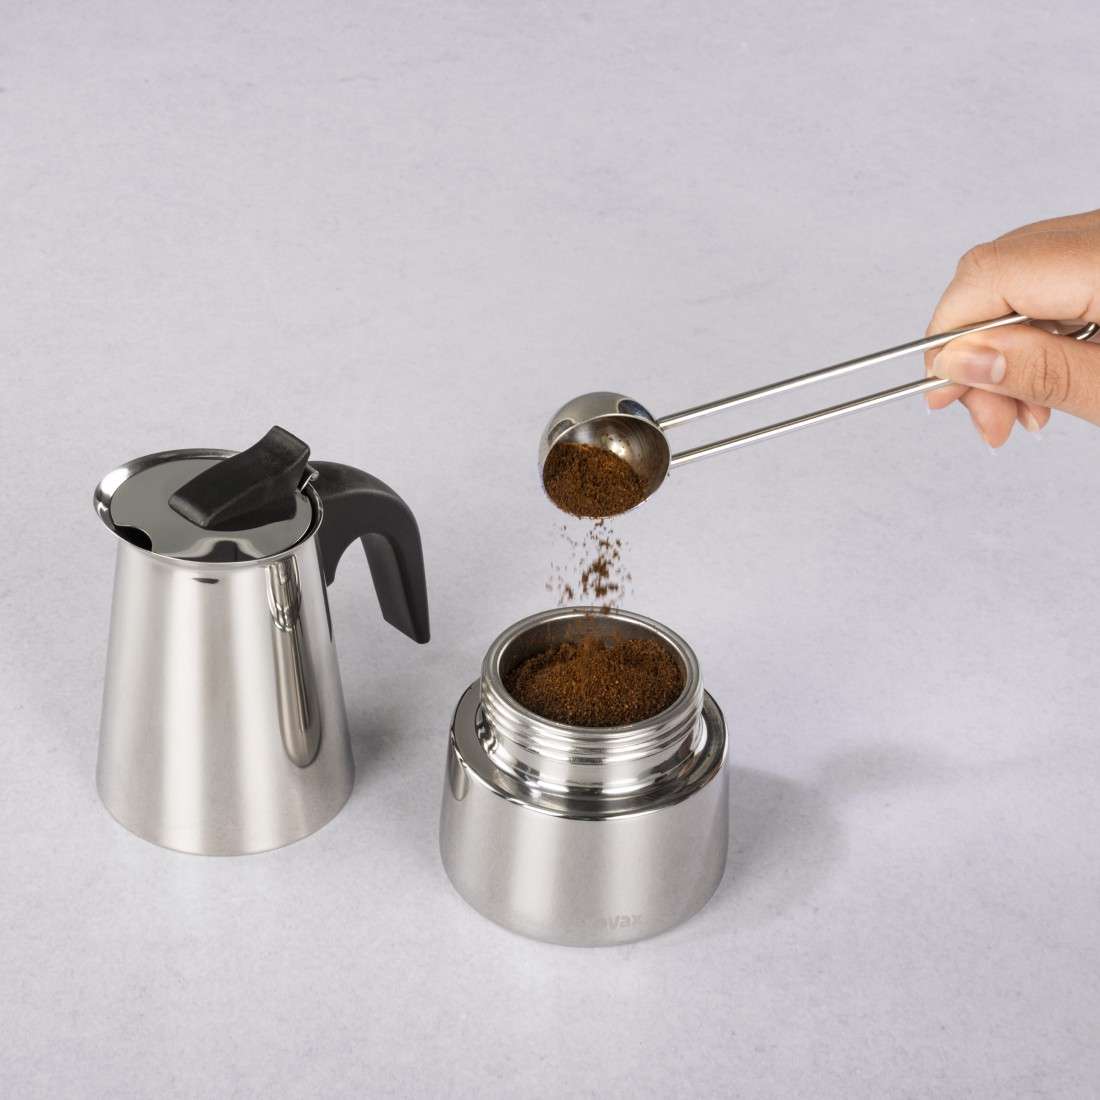 Espressokocher aus Edelstahl für 4 Tassen, Herdkanne, u.a. Induktion, 200ml